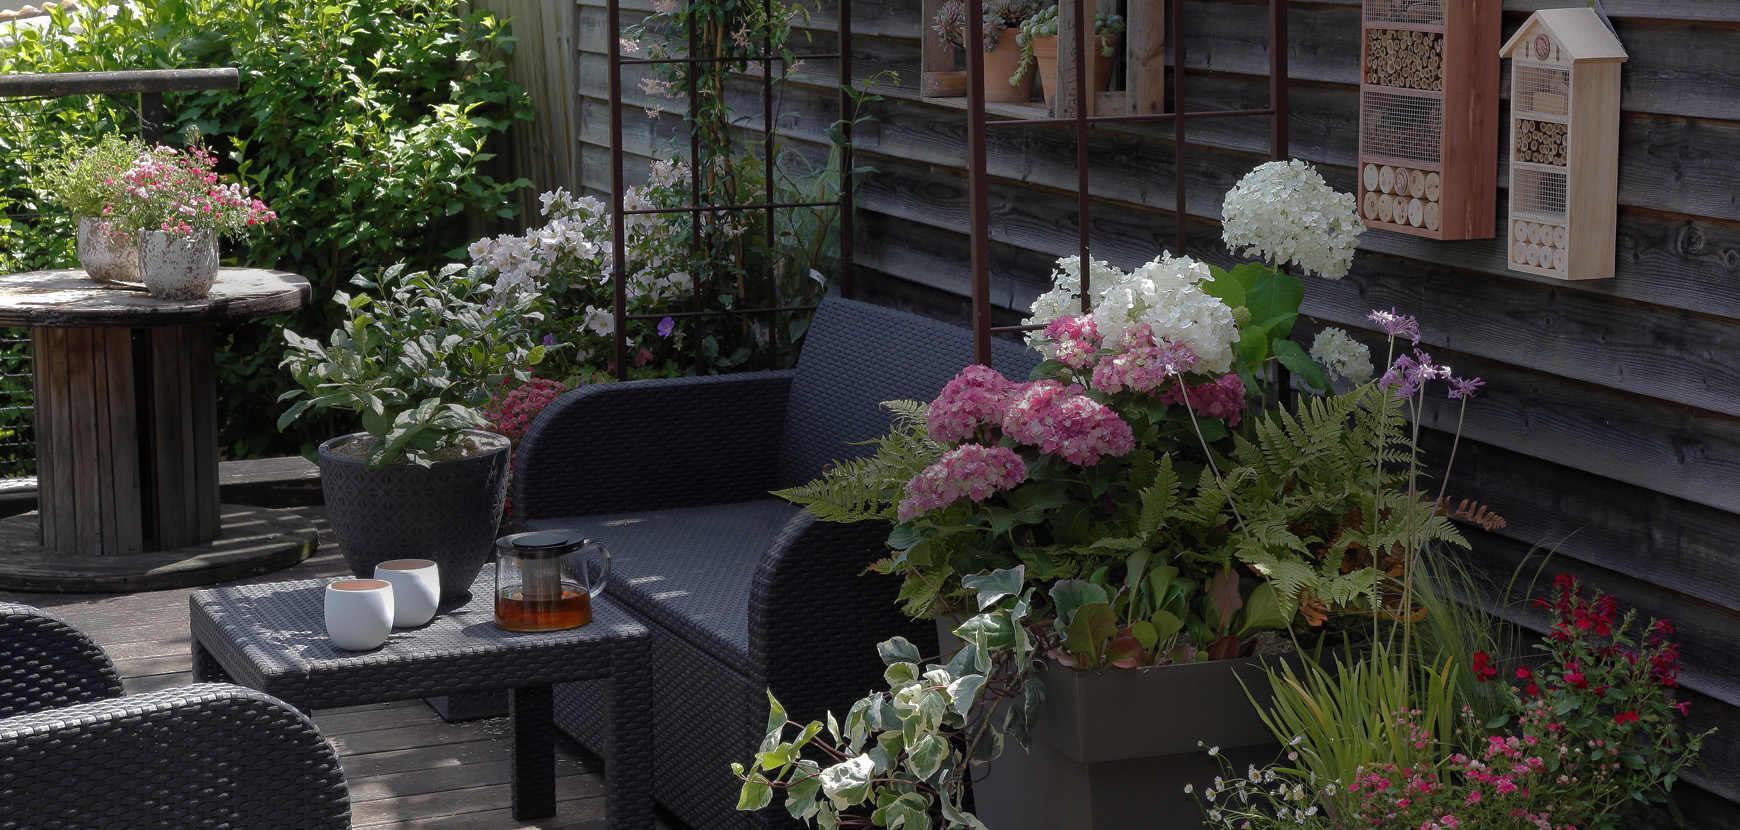 Les plantes qui vont pimper vos balcons et terrasses cet été !